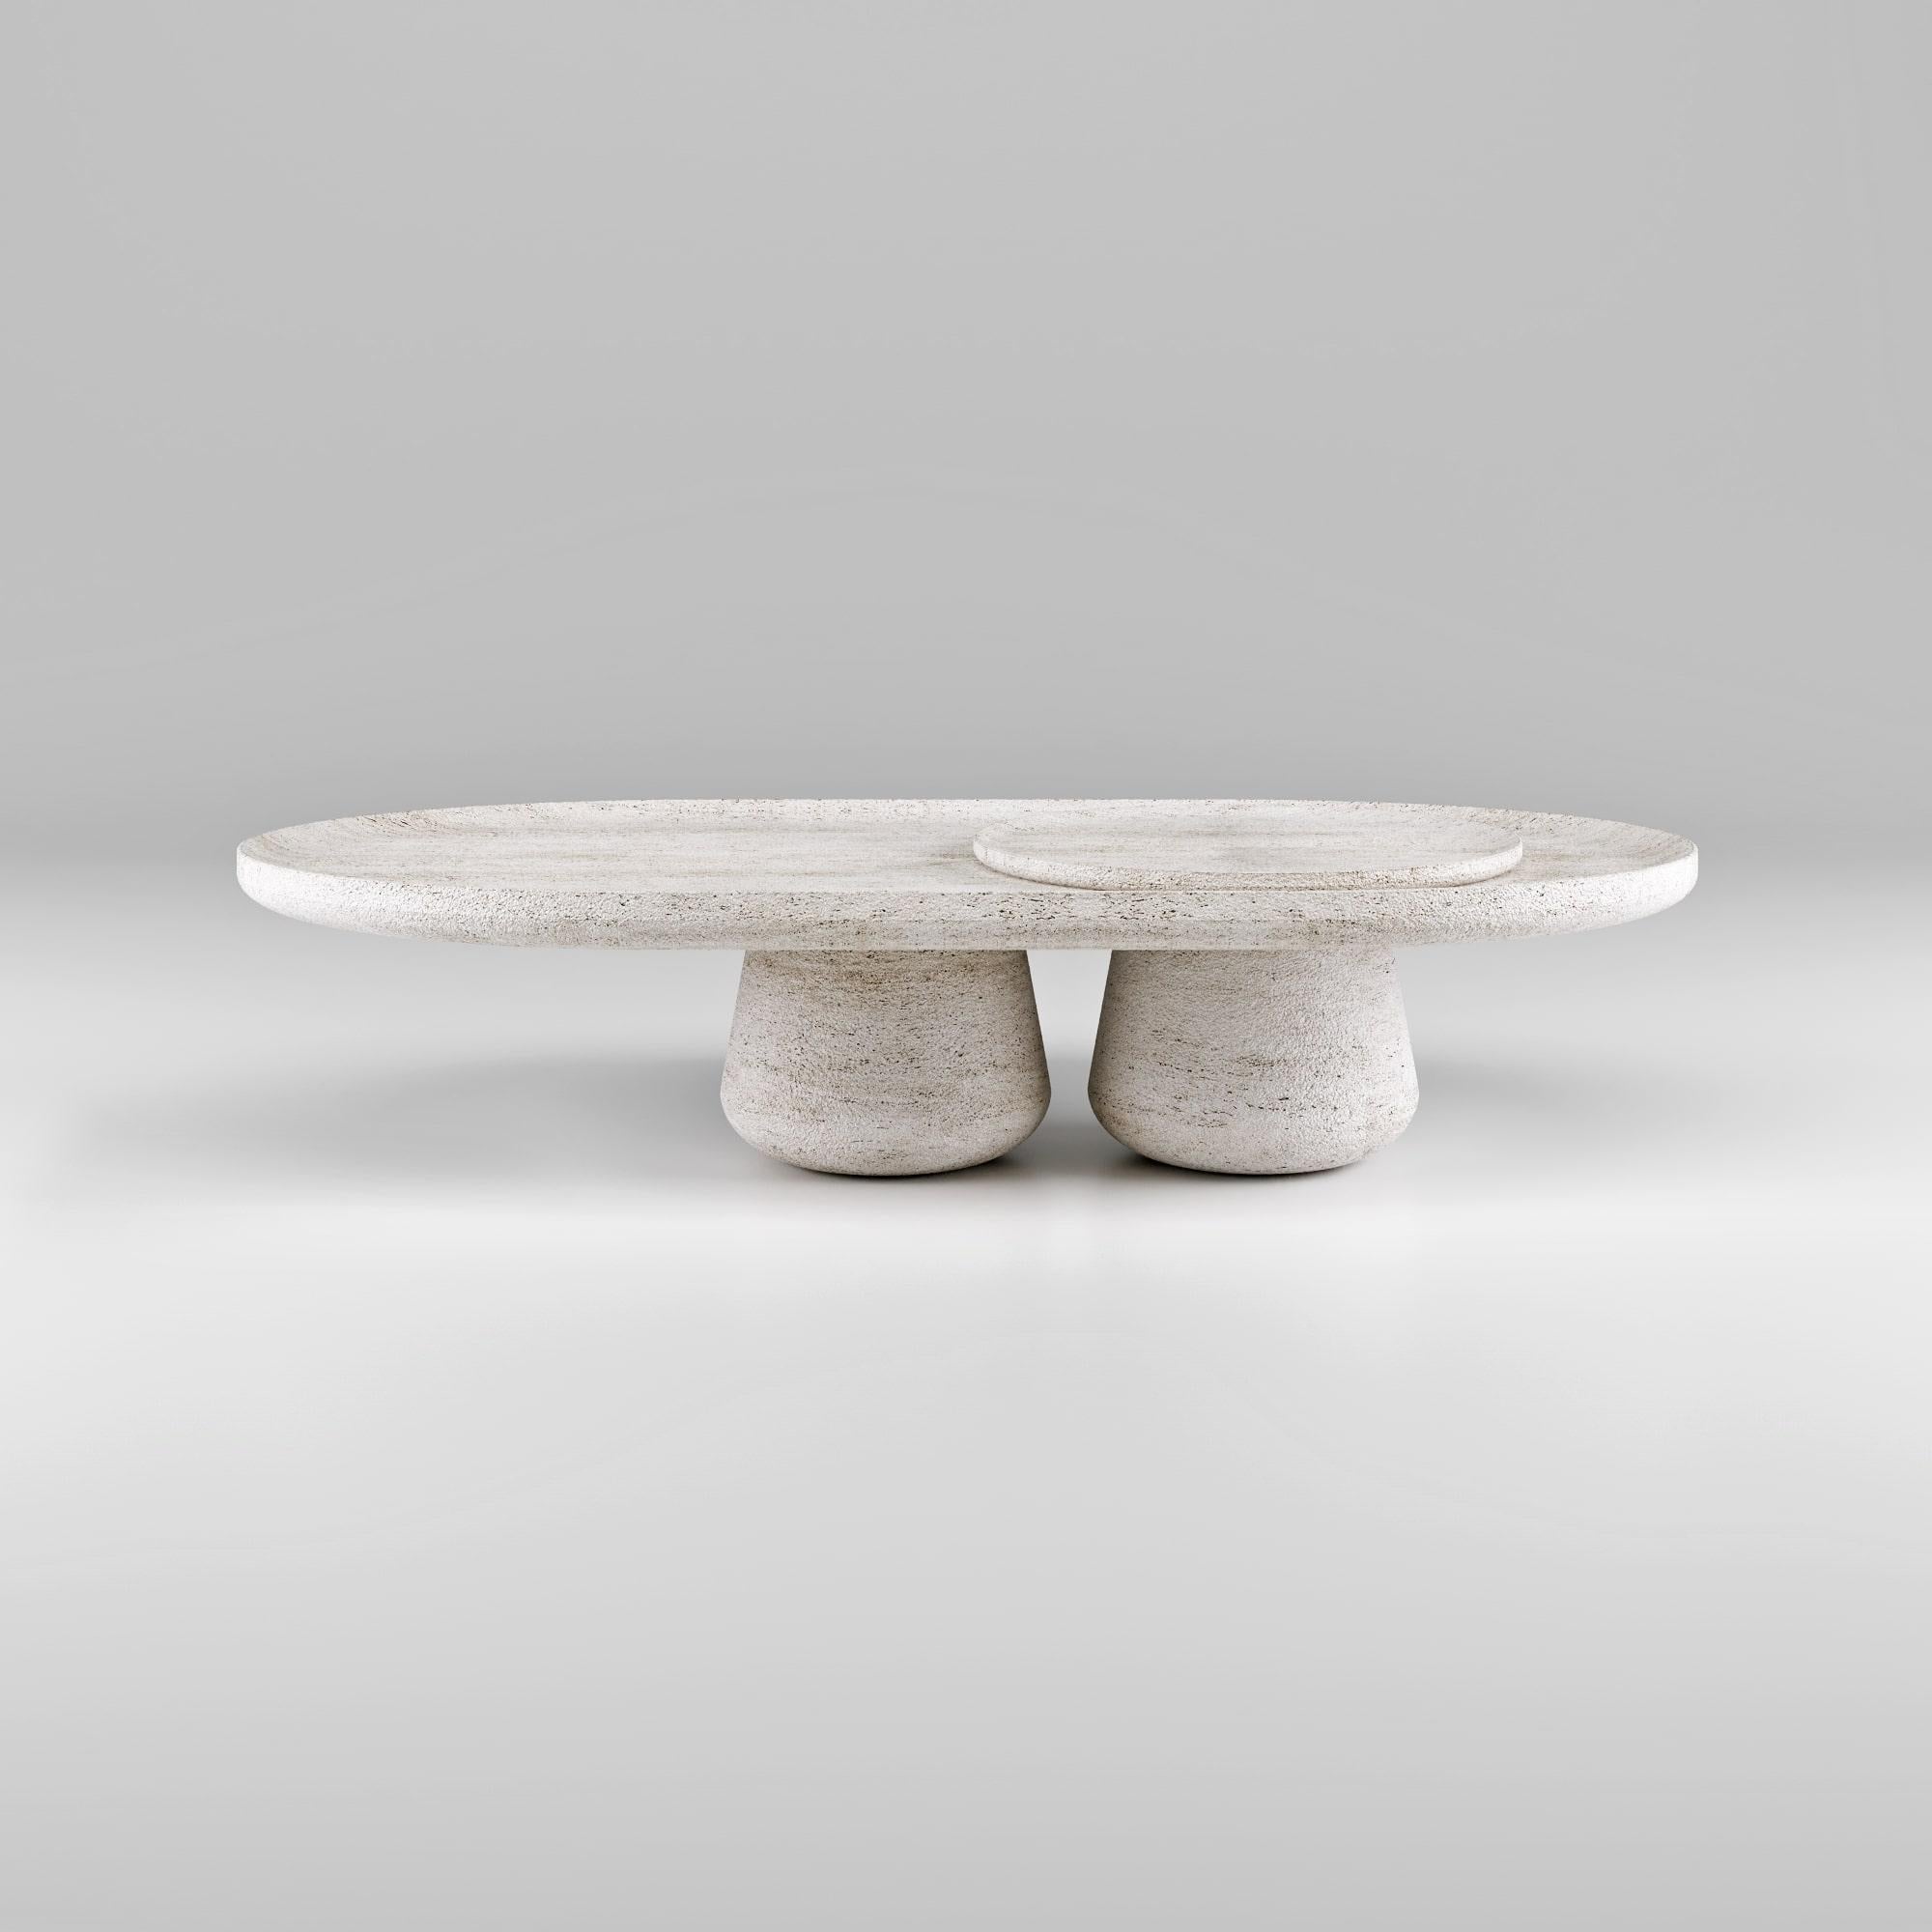 La table basse Bold incarne magnifiquement l'essence de l'artisanat italien grâce à une esthétique sophistiquée et une attention aux détails qui se traduisent par une expérience sensorielle sublime. Disponible en bois ou en pierre, chaque modèle a